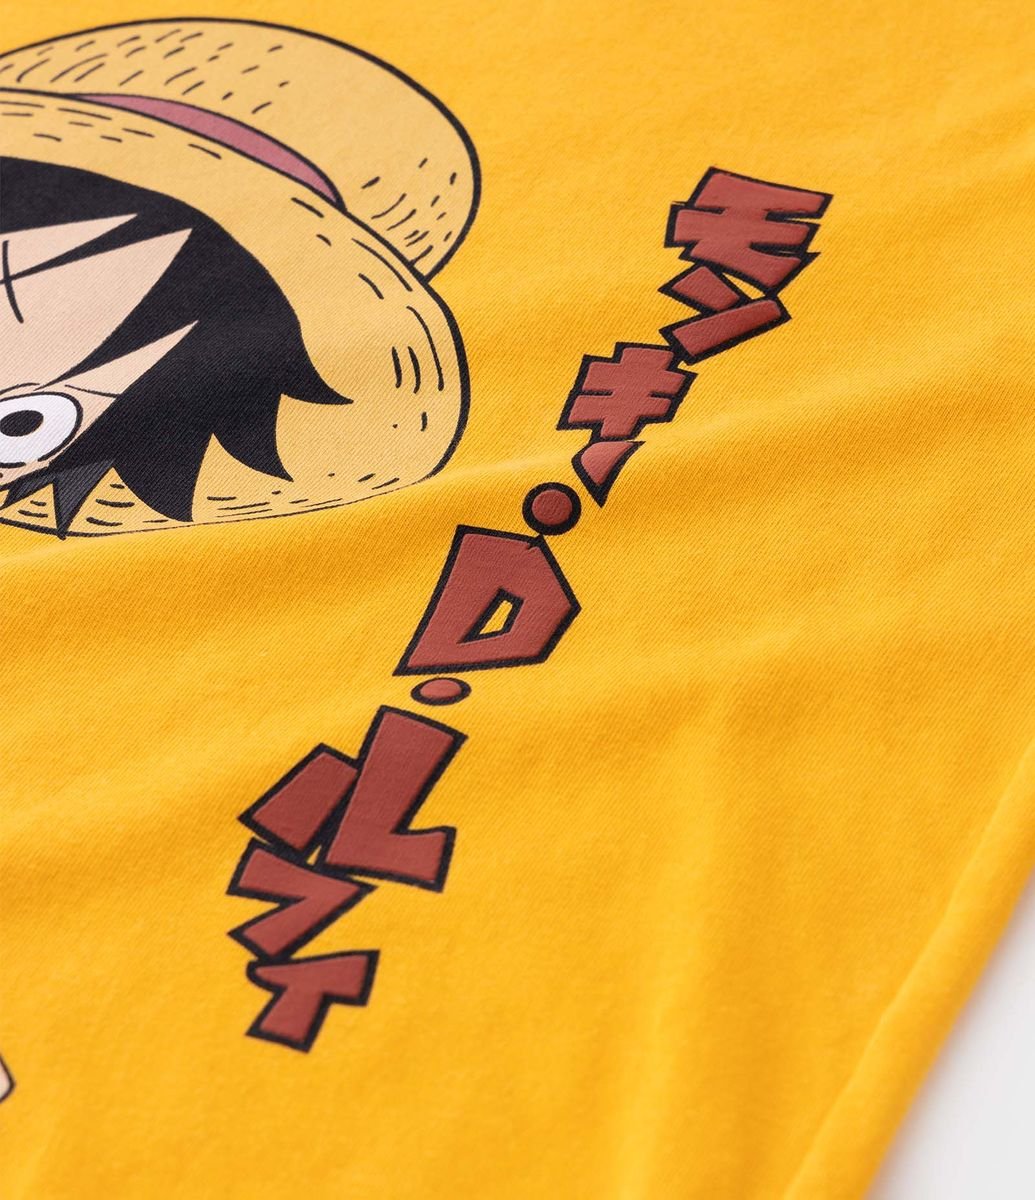 Camiseta Infantil com Estampa de Luffy One Piece - Tam 5 a 14 anos Branco